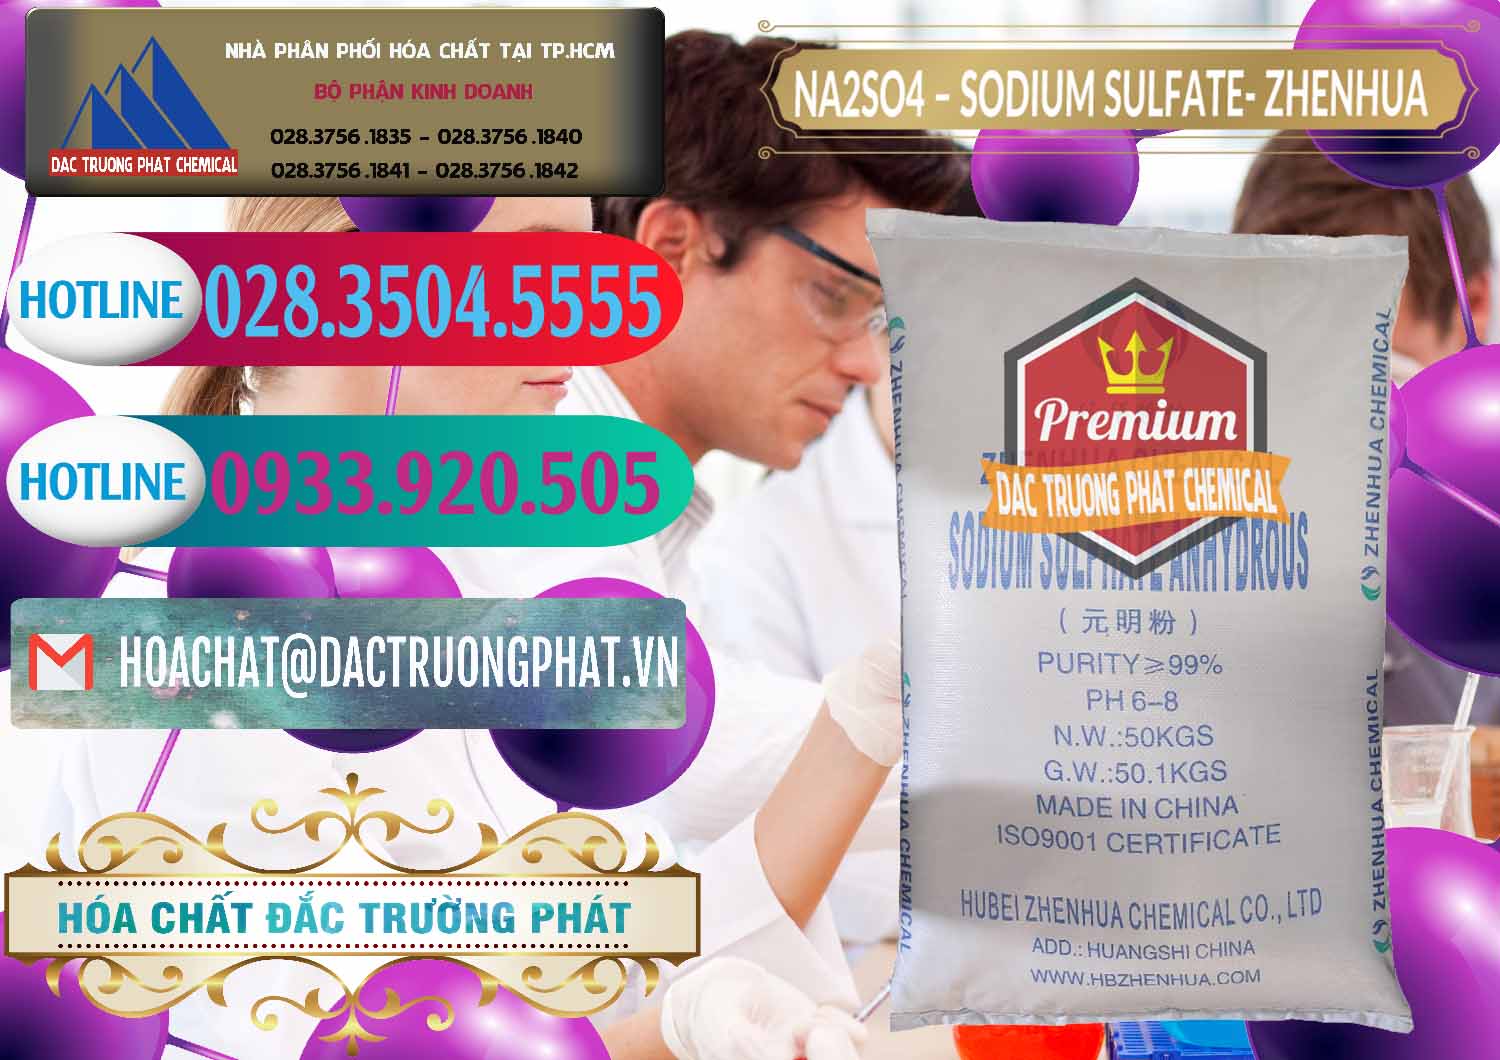 Chuyên bán ( phân phối ) Sodium Sulphate - Muối Sunfat Na2SO4 Zhenhua Trung Quốc China - 0101 - Phân phối ( cung cấp ) hóa chất tại TP.HCM - truongphat.vn